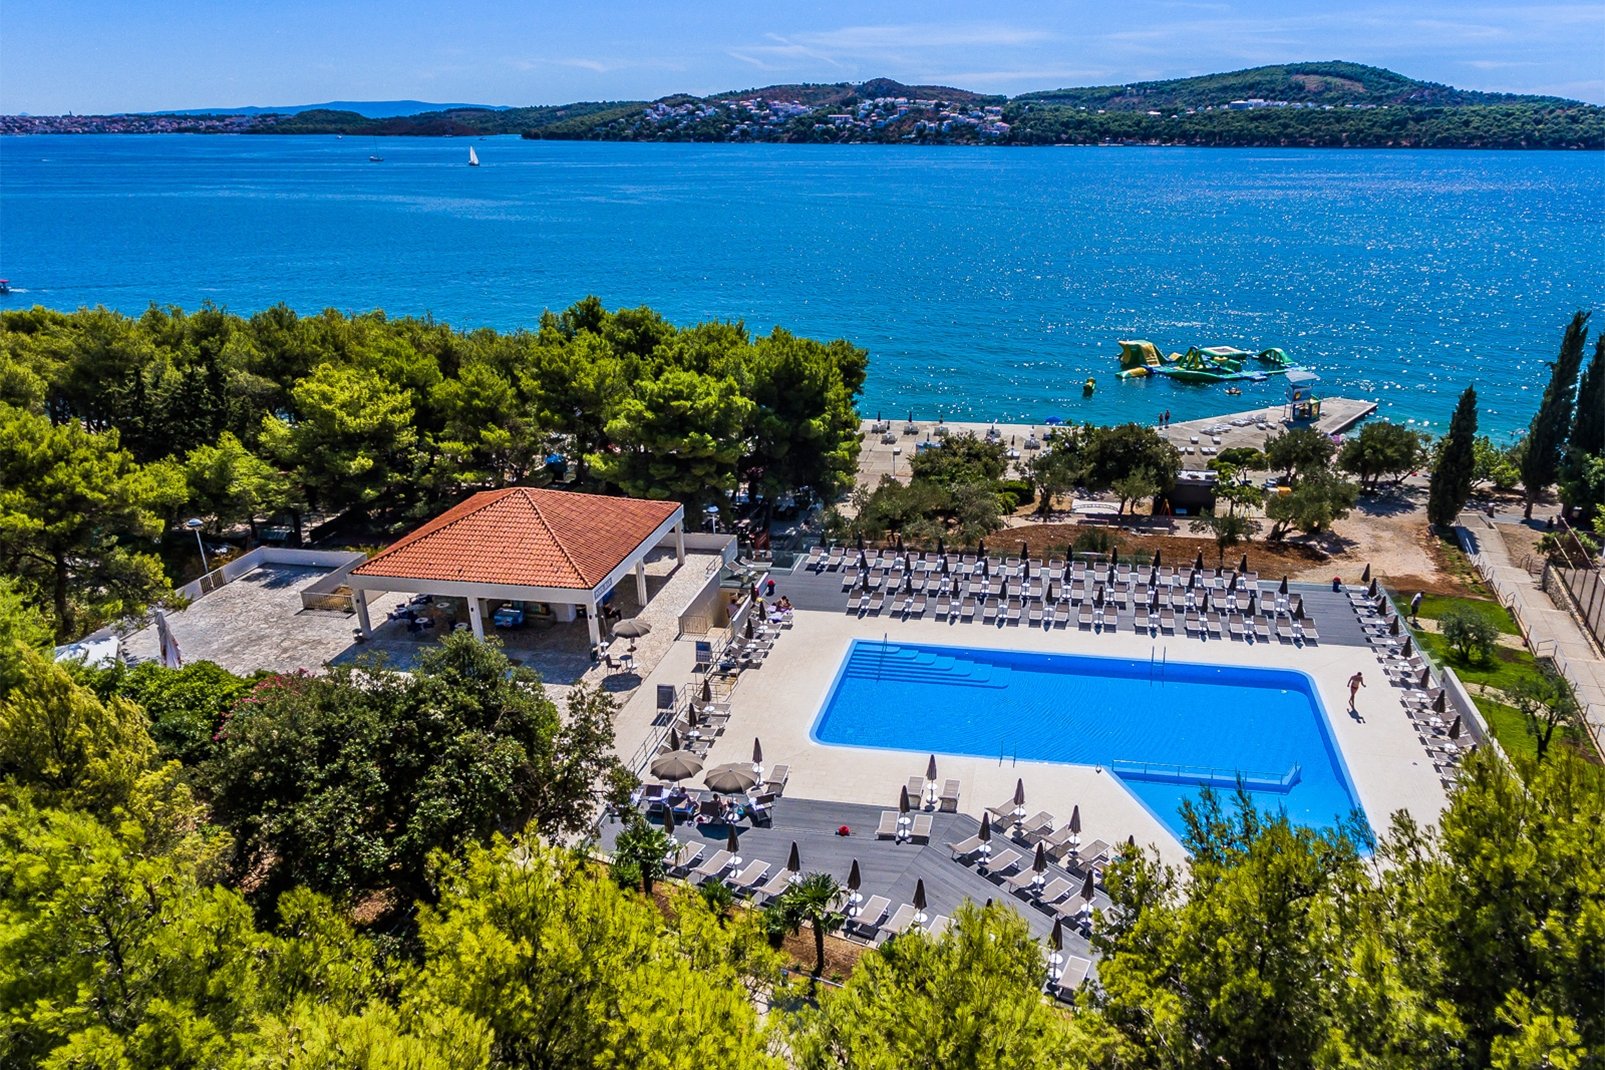 Vacances en Croatie, des séjours 8j/7n à partir de 374€/pers tout compris avec vol inclus